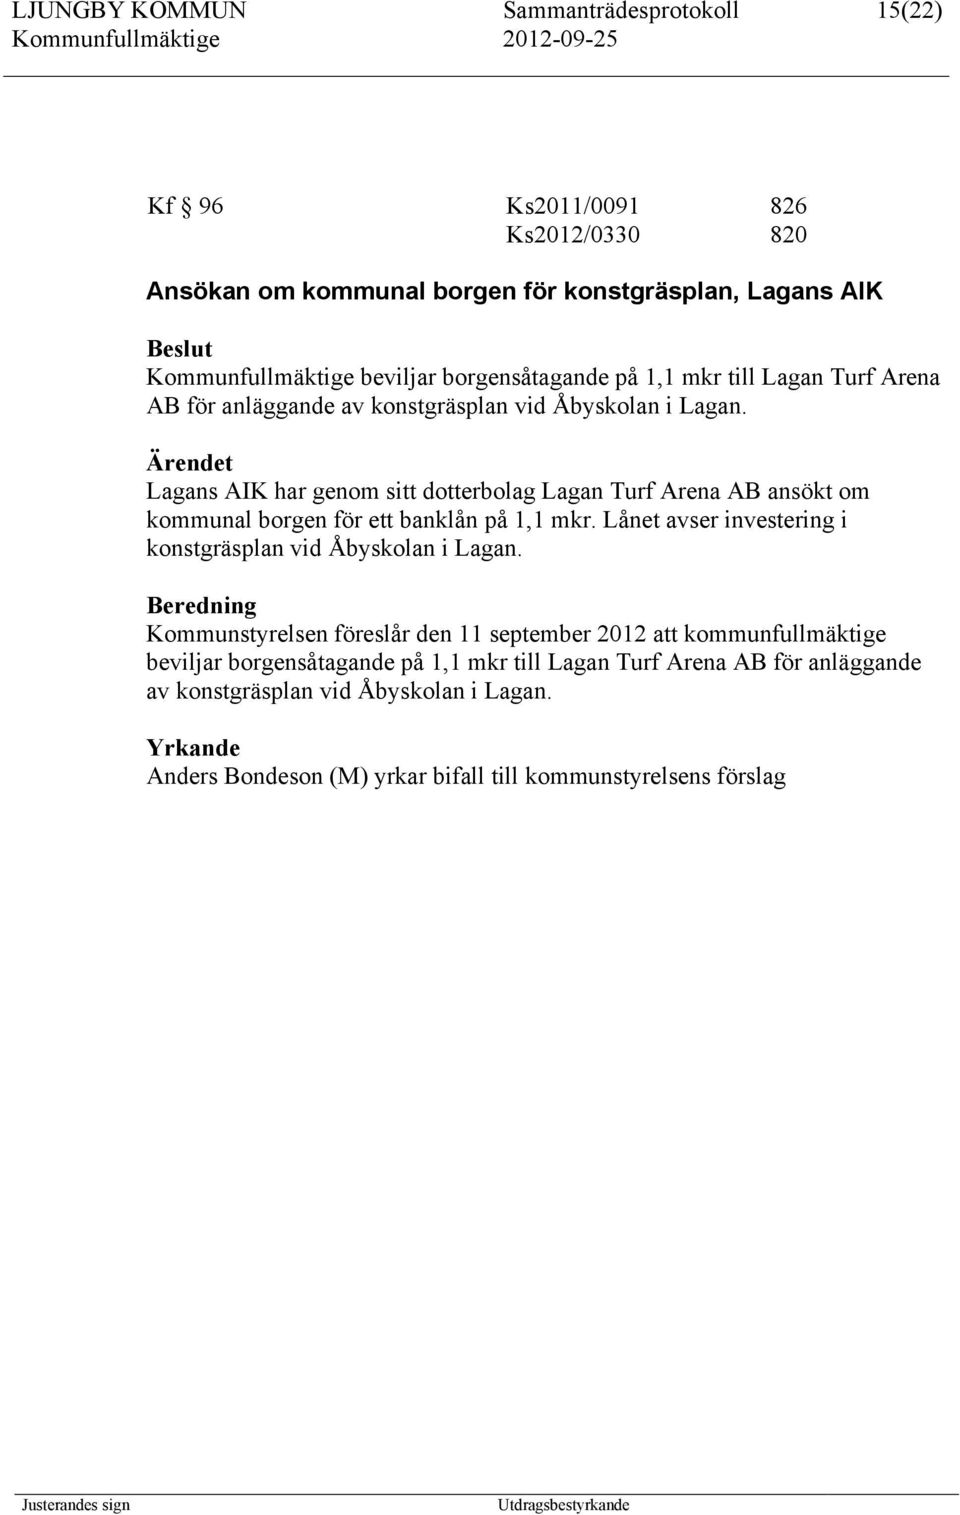 Lagans AIK har genom sitt dotterbolag Lagan Turf Arena AB ansökt om kommunal borgen för ett banklån på 1,1 mkr. Lånet avser investering i konstgräsplan vid Åbyskolan i Lagan.